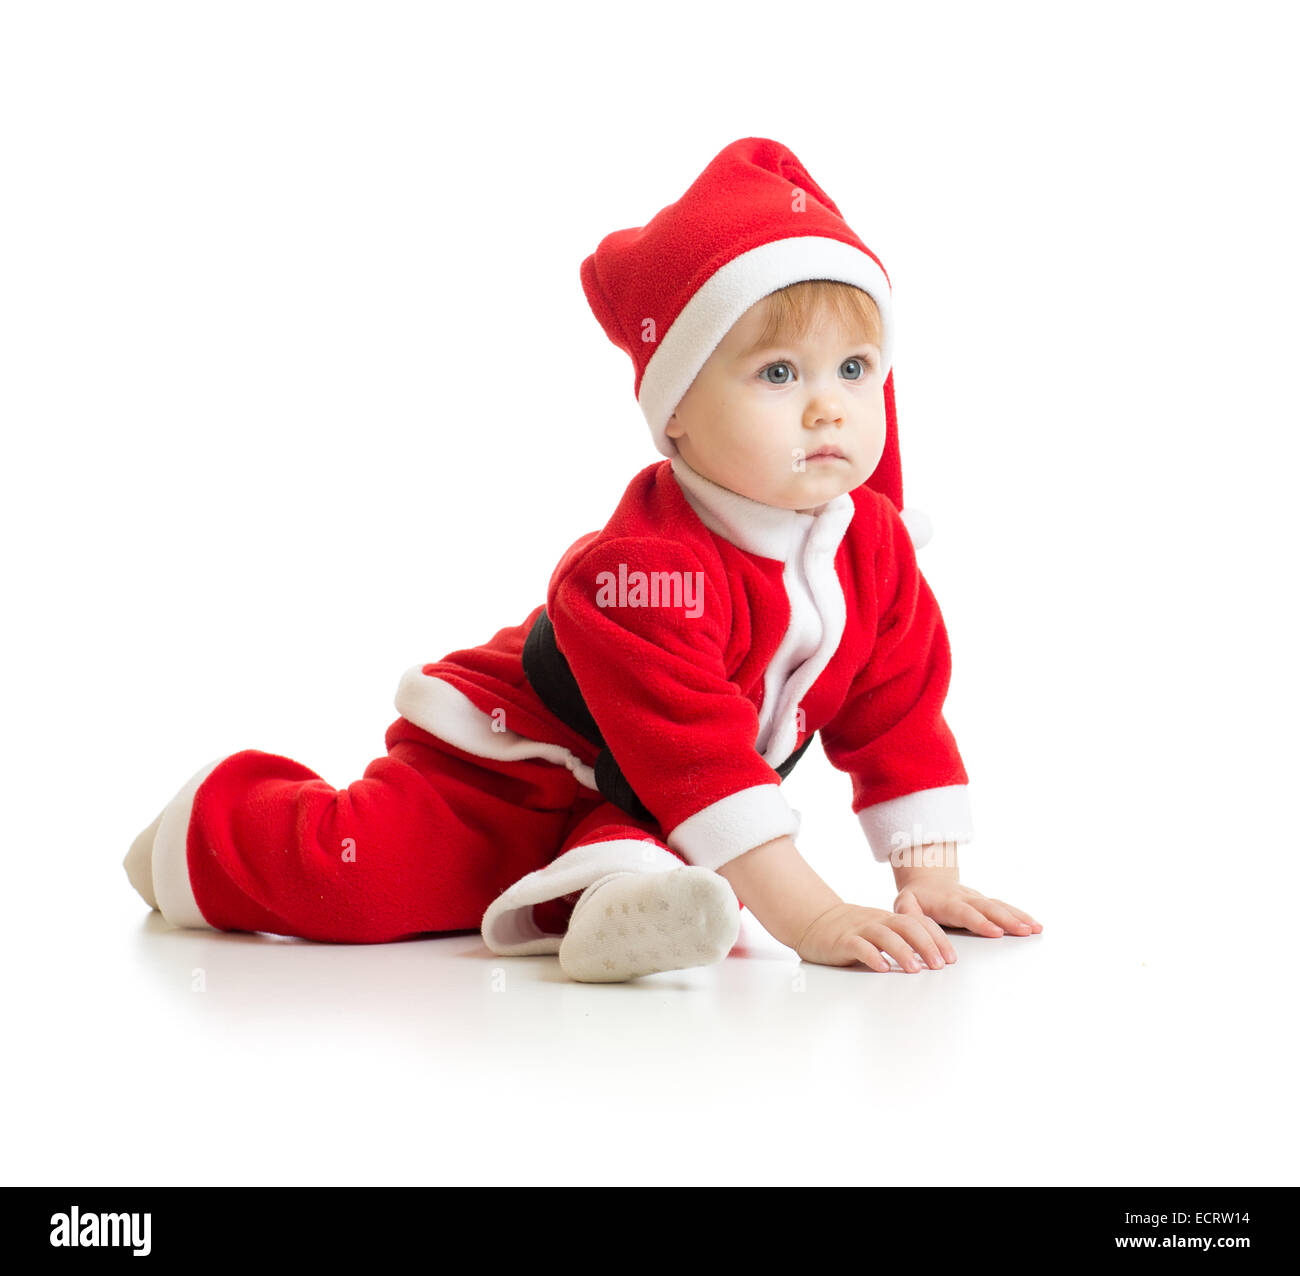 Noël bébé à Santa's clothes isolated on white Banque D'Images